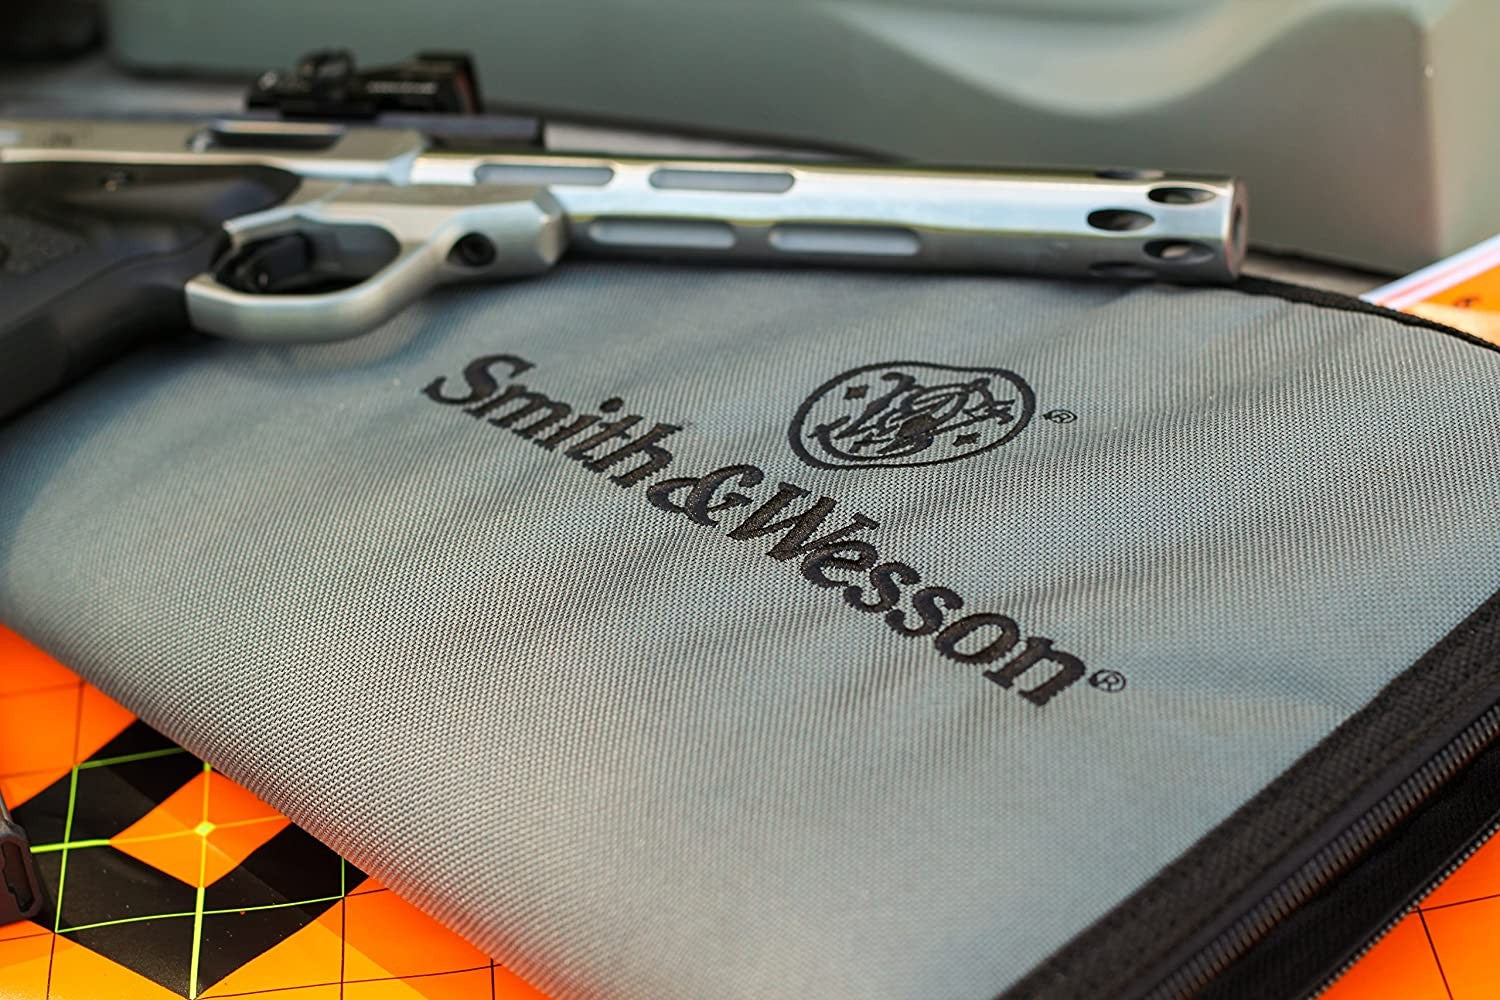 M&P Funda acolchada para pistola caza tiro deportes almacenamiento y transporte Pequeño by Smith & Wesson